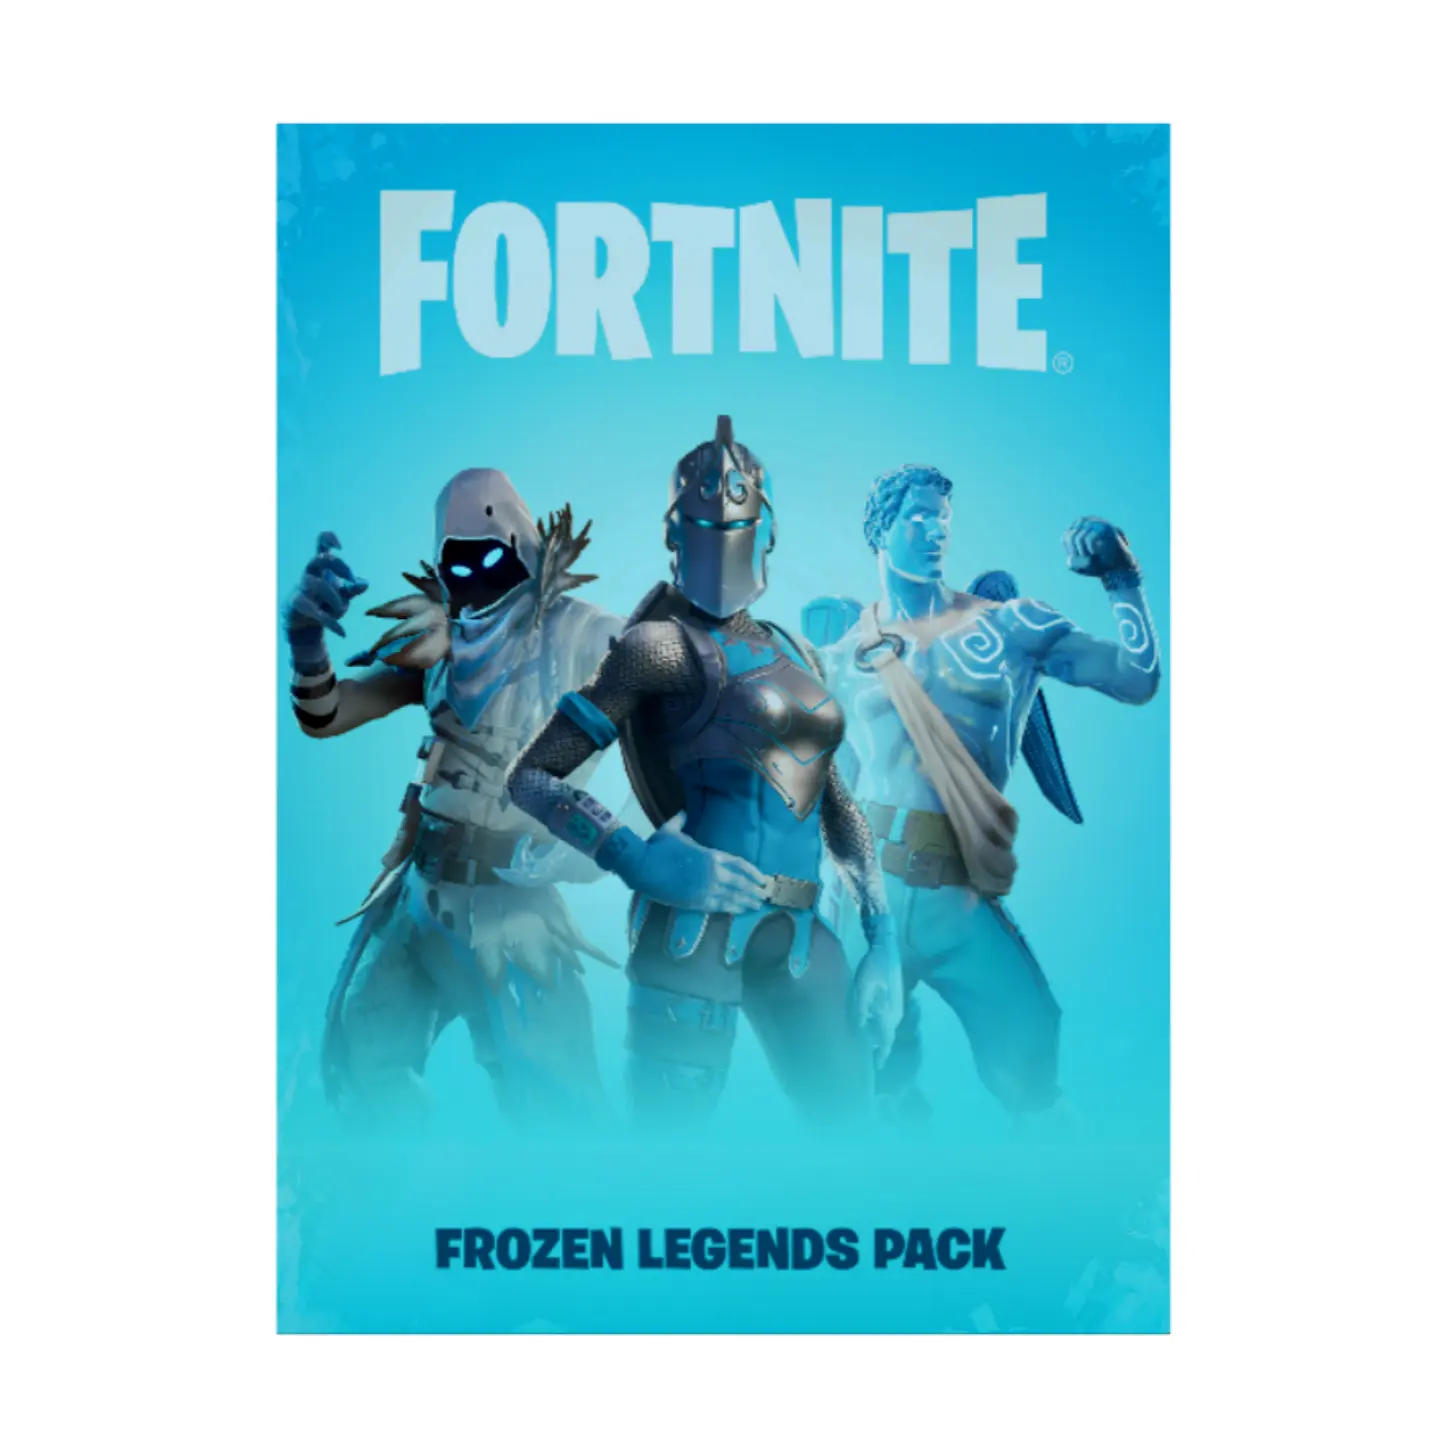 Fortniter Frozen Legends Pack Gift Card - Epic Games Store Pack Only Need $12.99 Buy Fortniter Frozen Legends Pack Online